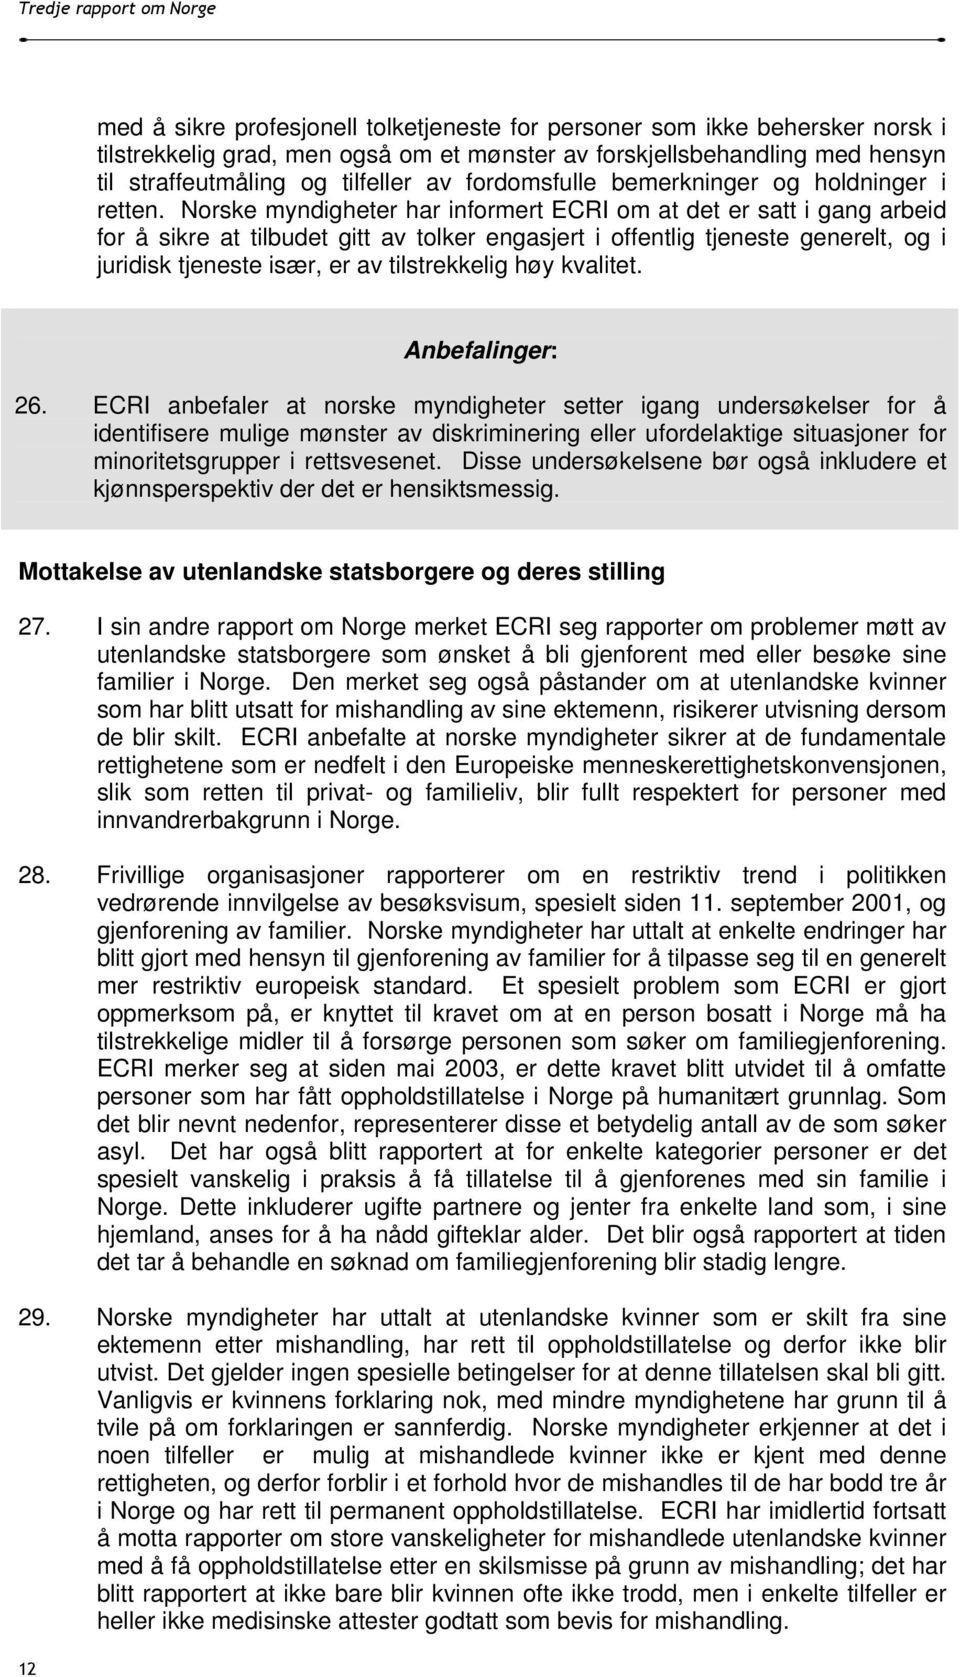 Norske myndigheter har informert ECRI om at det er satt i gang arbeid for å sikre at tilbudet gitt av tolker engasjert i offentlig tjeneste generelt, og i juridisk tjeneste især, er av tilstrekkelig